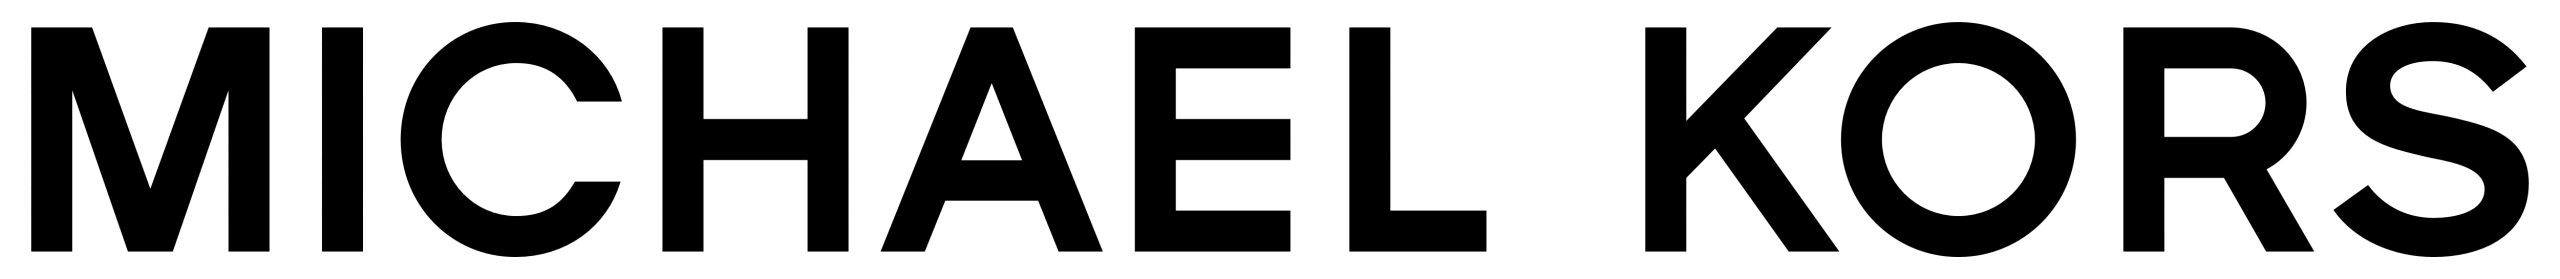 Logotipo de Michael Kors